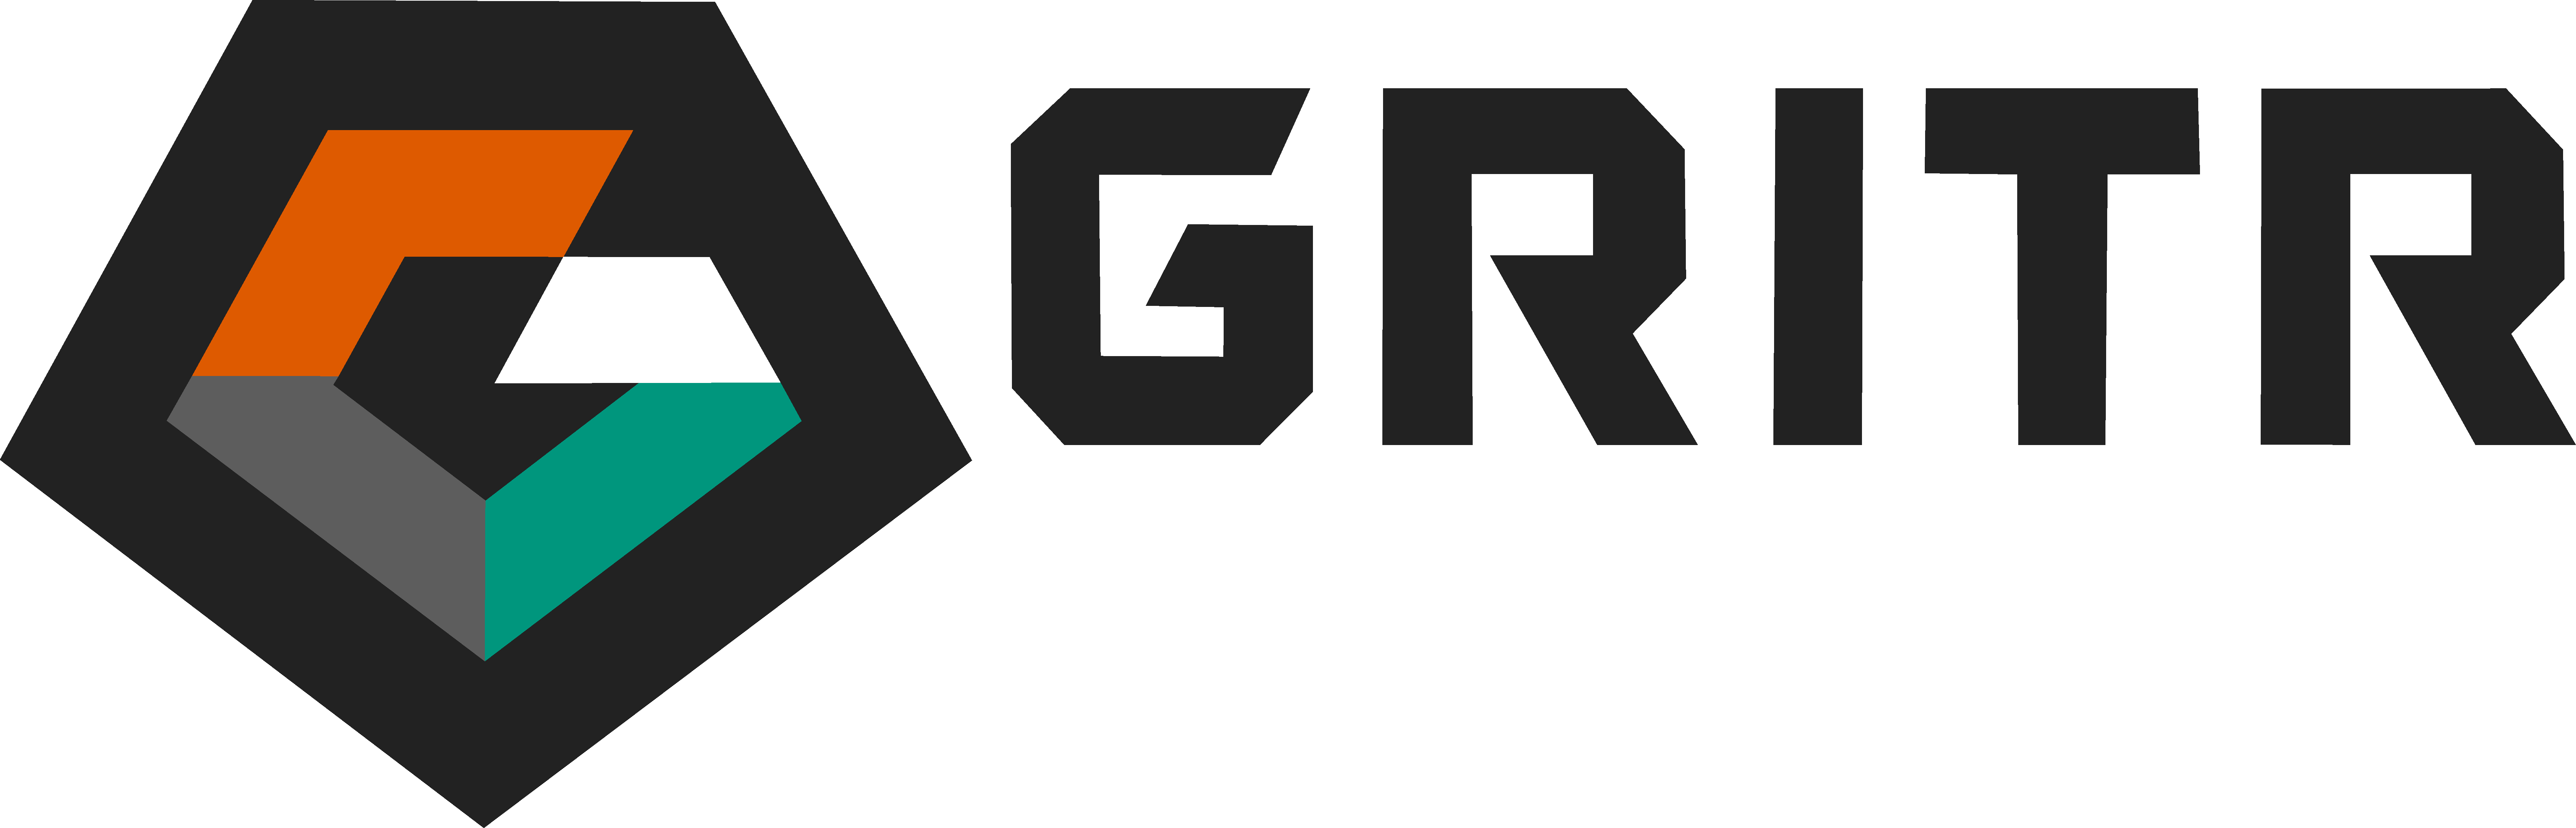 Five Reasons to Choose GRITR GEAR